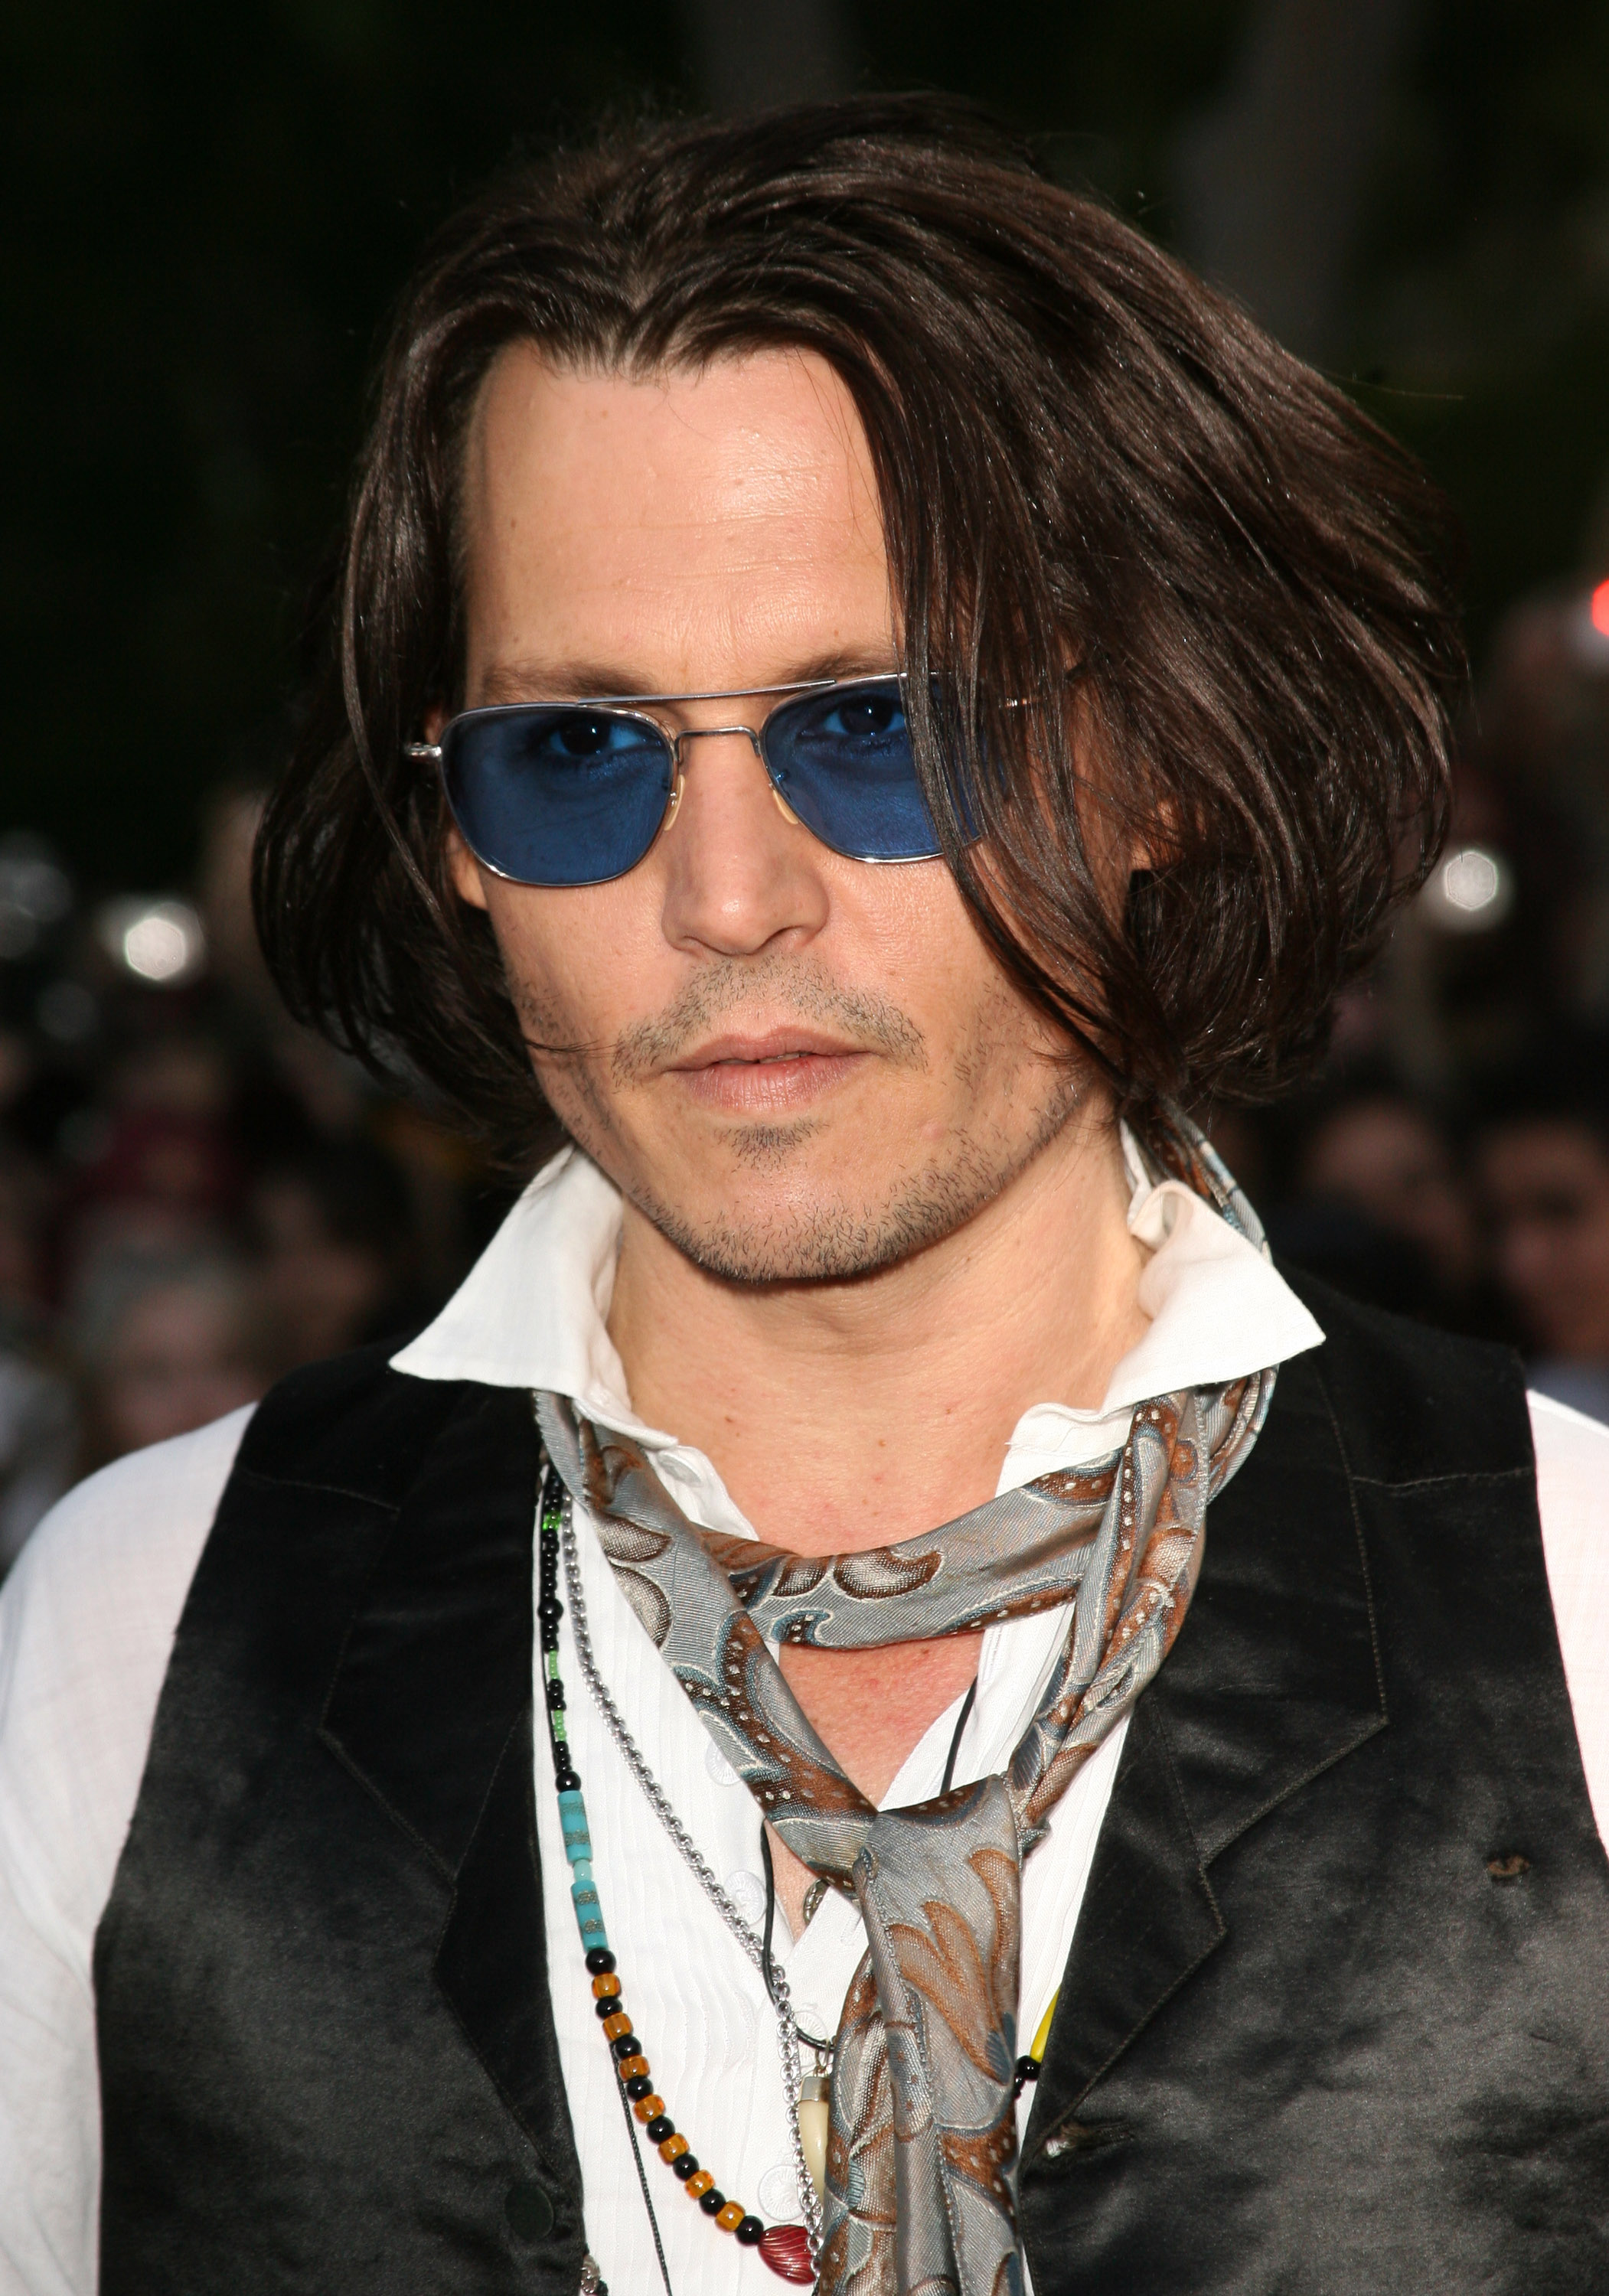 Johnny Depp en el estreno mundial de "Pirates of the Caribbean: At World's End" en Anaheim, California, el 19 de mayo de 2007 | Foto: Getty Images